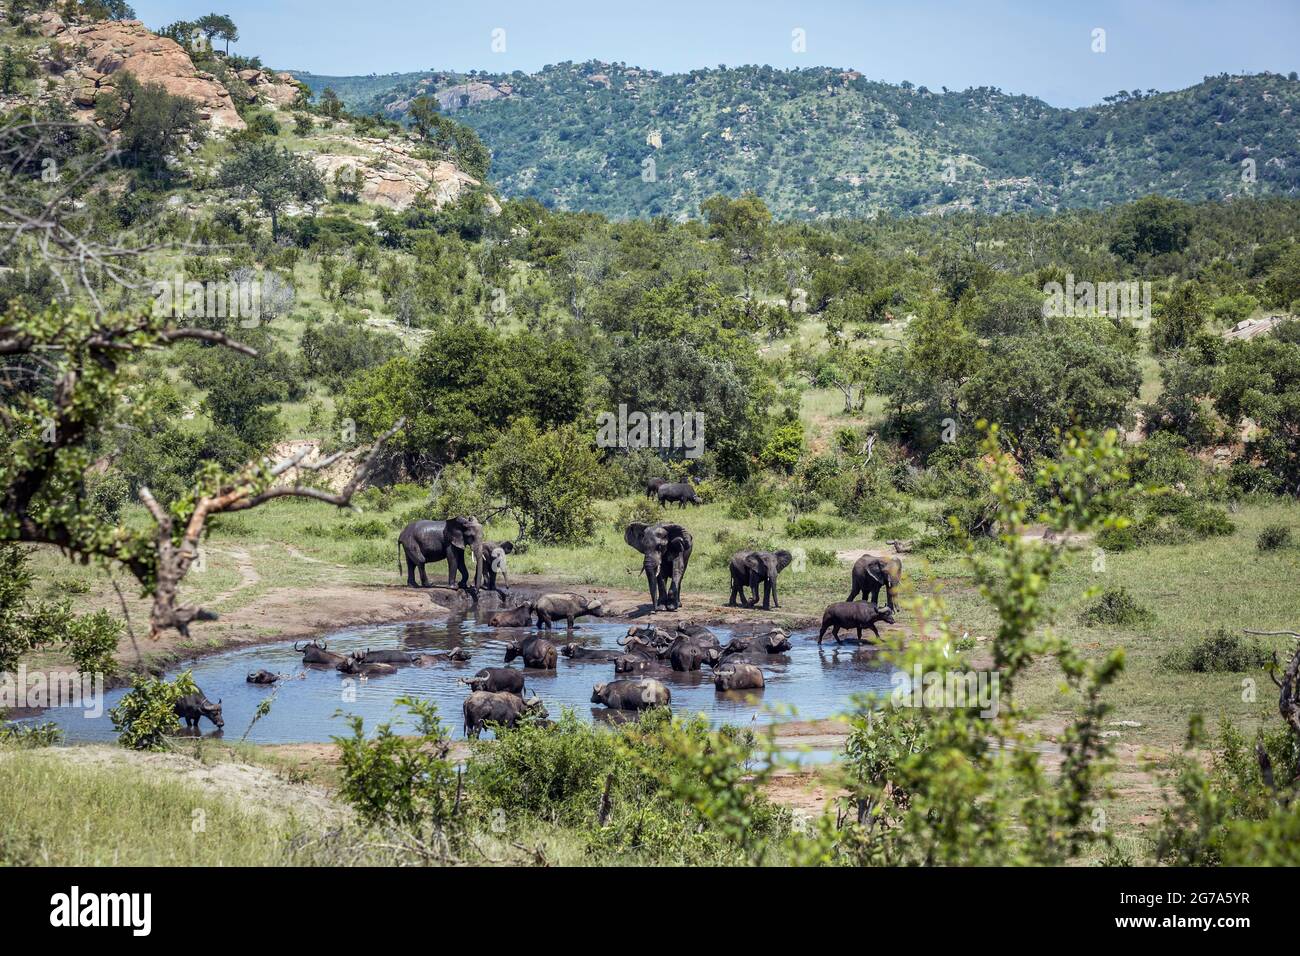 Bush africain et de l'éléphant d'Afrique à l'eau dans le parc national Kruger, Afrique du Sud ; espèce de la famille des Elephantidae Loxodonta africana Banque D'Images